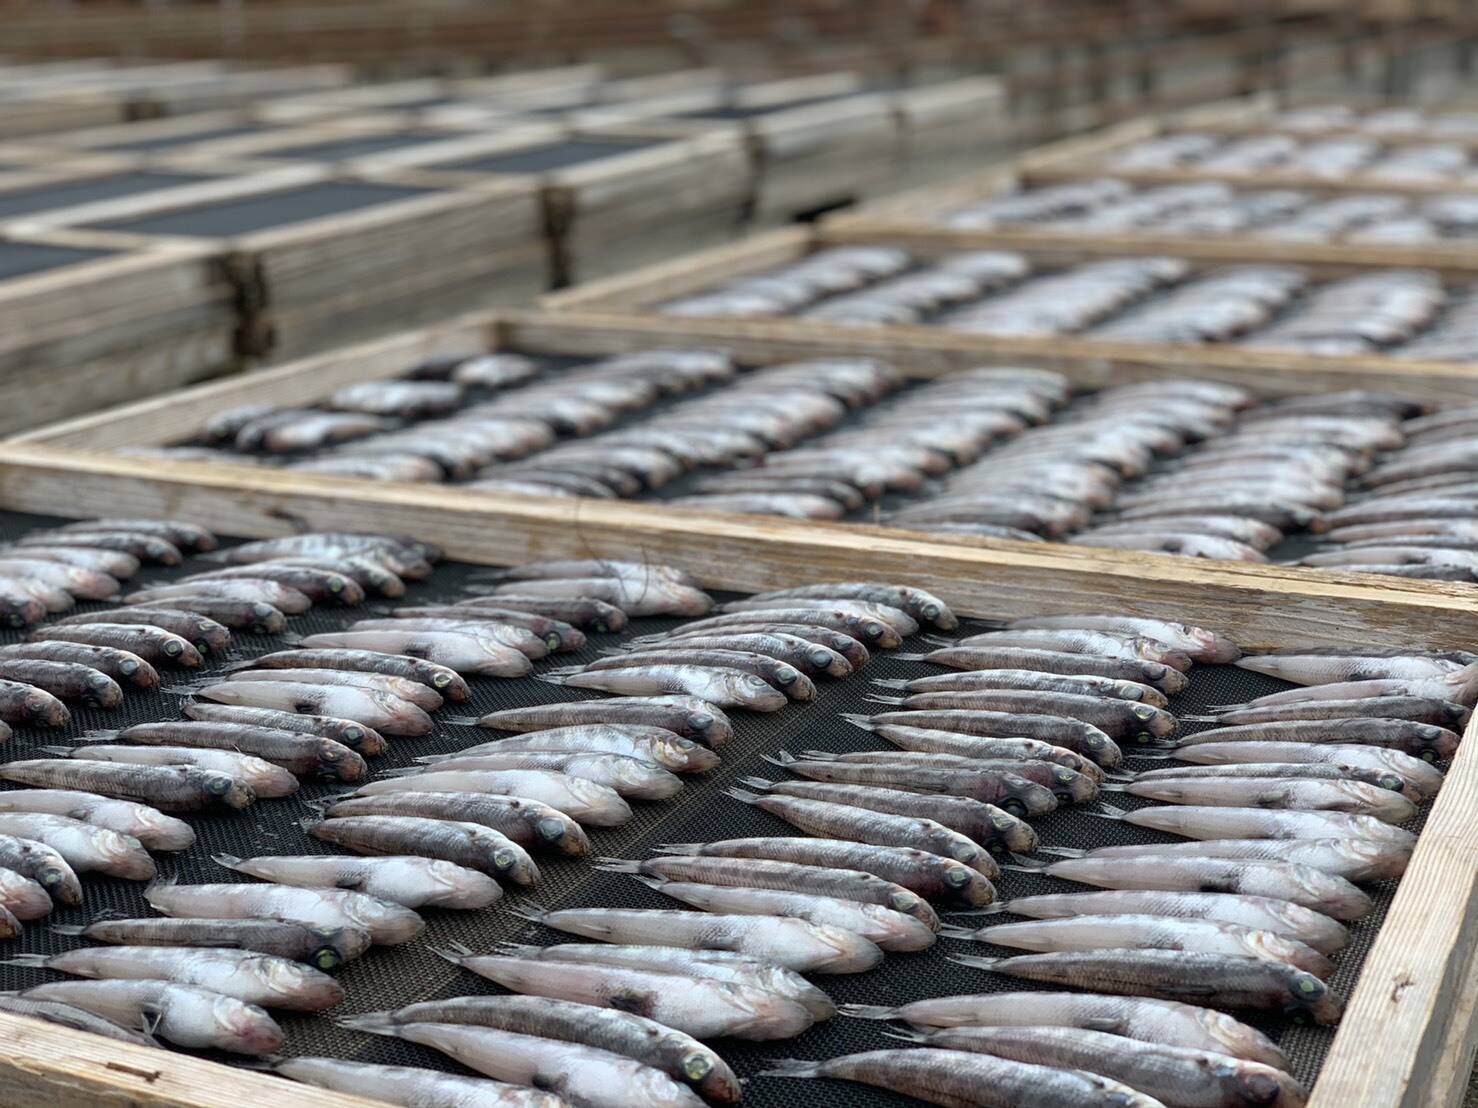 丸干し対決 さよりvs メヒカリの食べ比べセット 千葉県産 食べチョク 農家 漁師の産直ネット通販 旬の食材を生産者直送